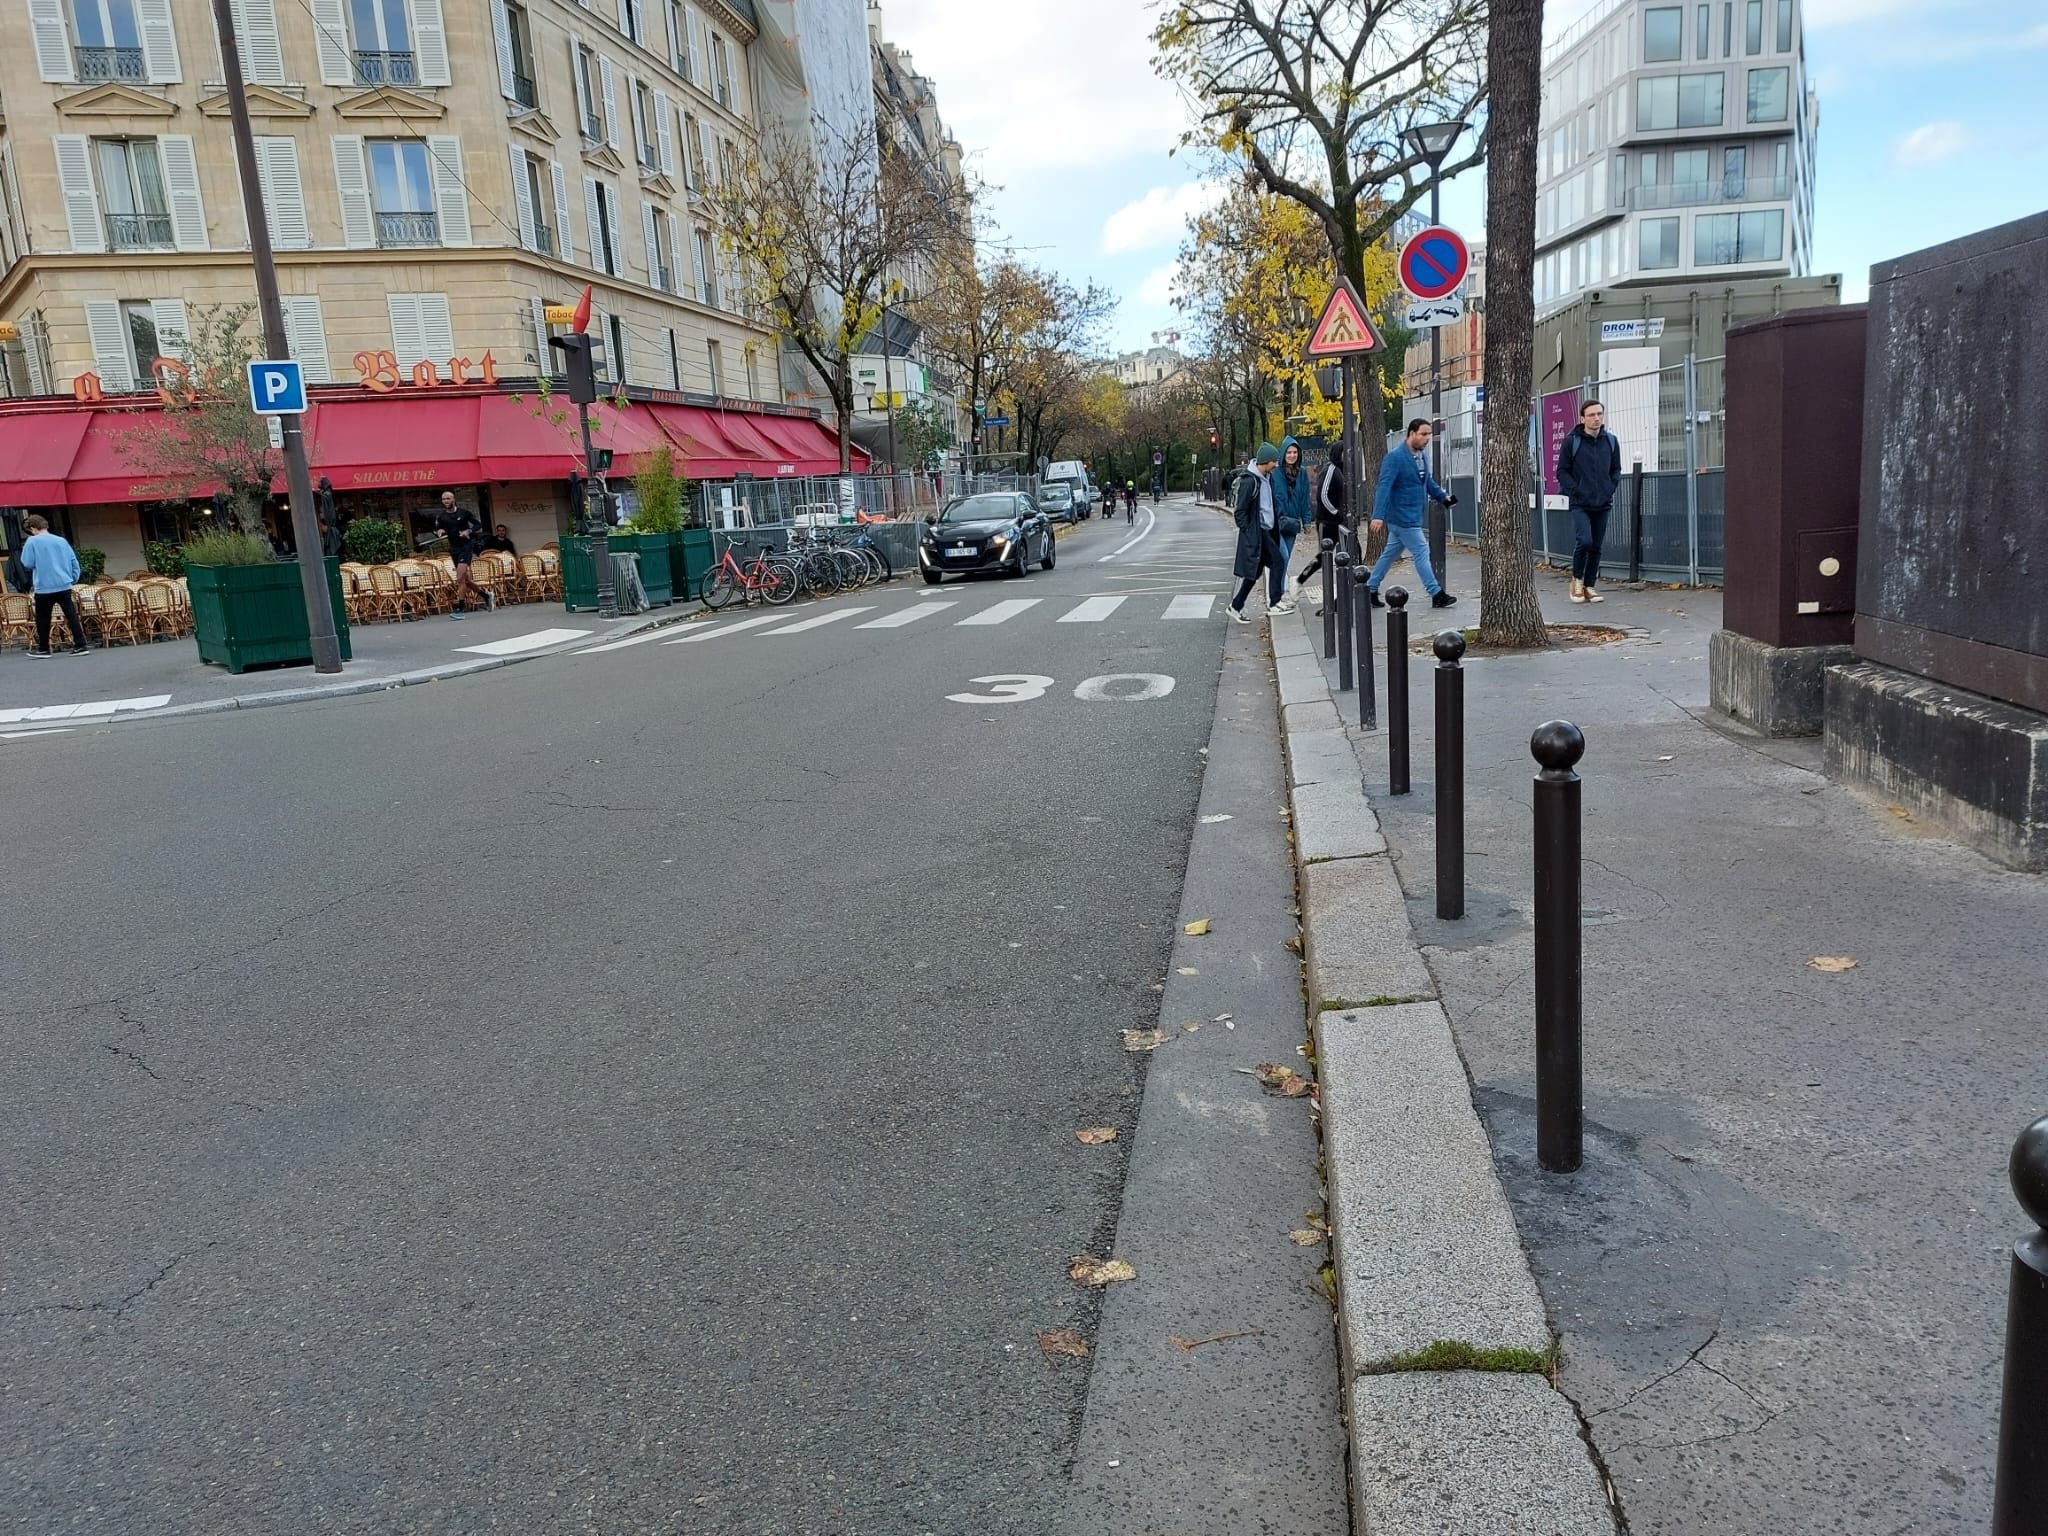 Paris (XVIIe), le 29 octobre. C'est ici qu'un piéton a été percuté mortellement par un automobiliste, qui a ensuite pris la fuite. LP/Nicolas Goinard